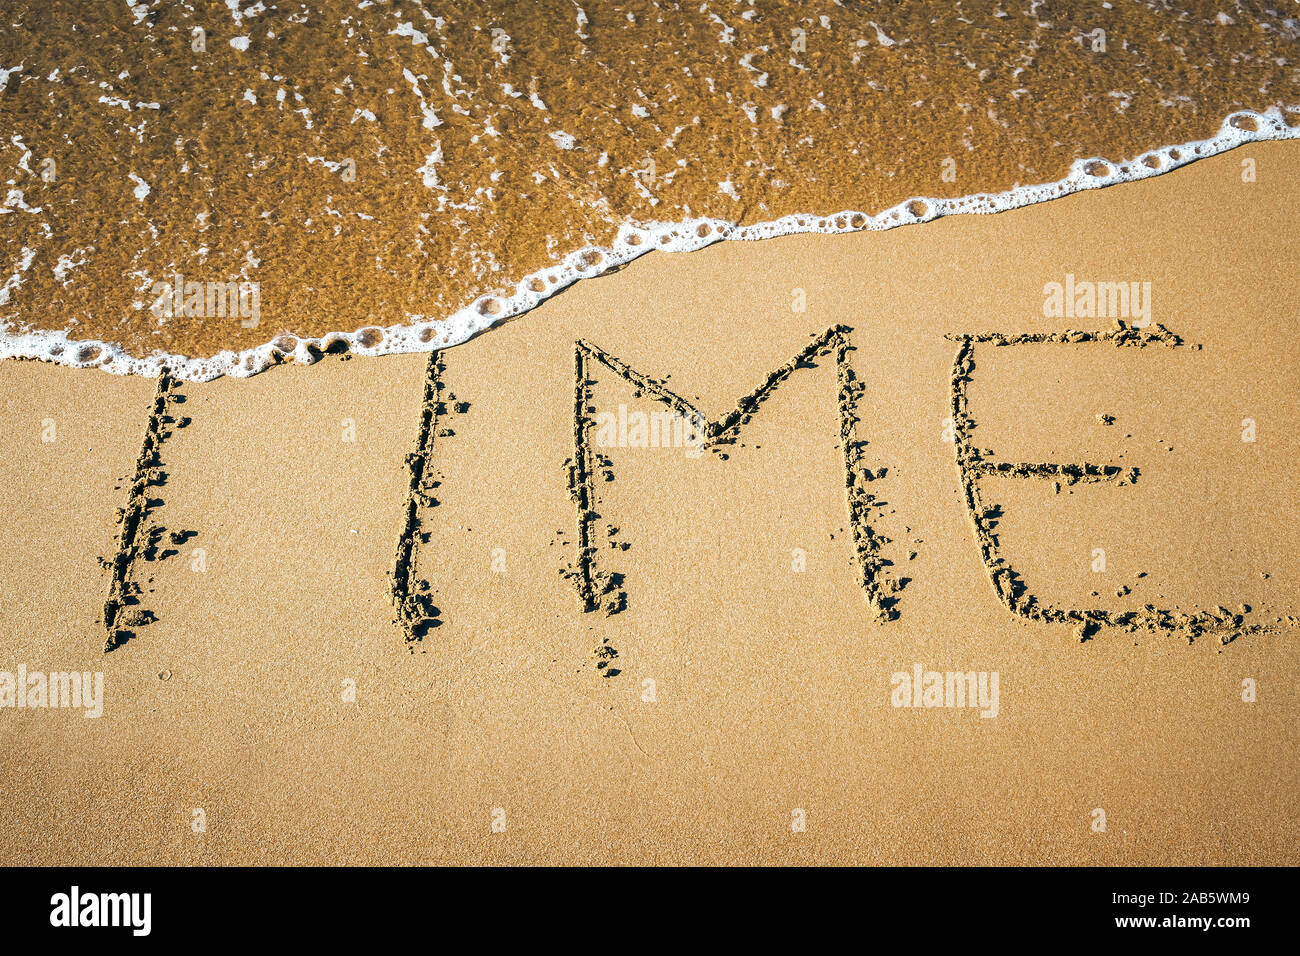 Ein Sandstrand, auf dem 'Temps' geschrieben steht. Banque D'Images